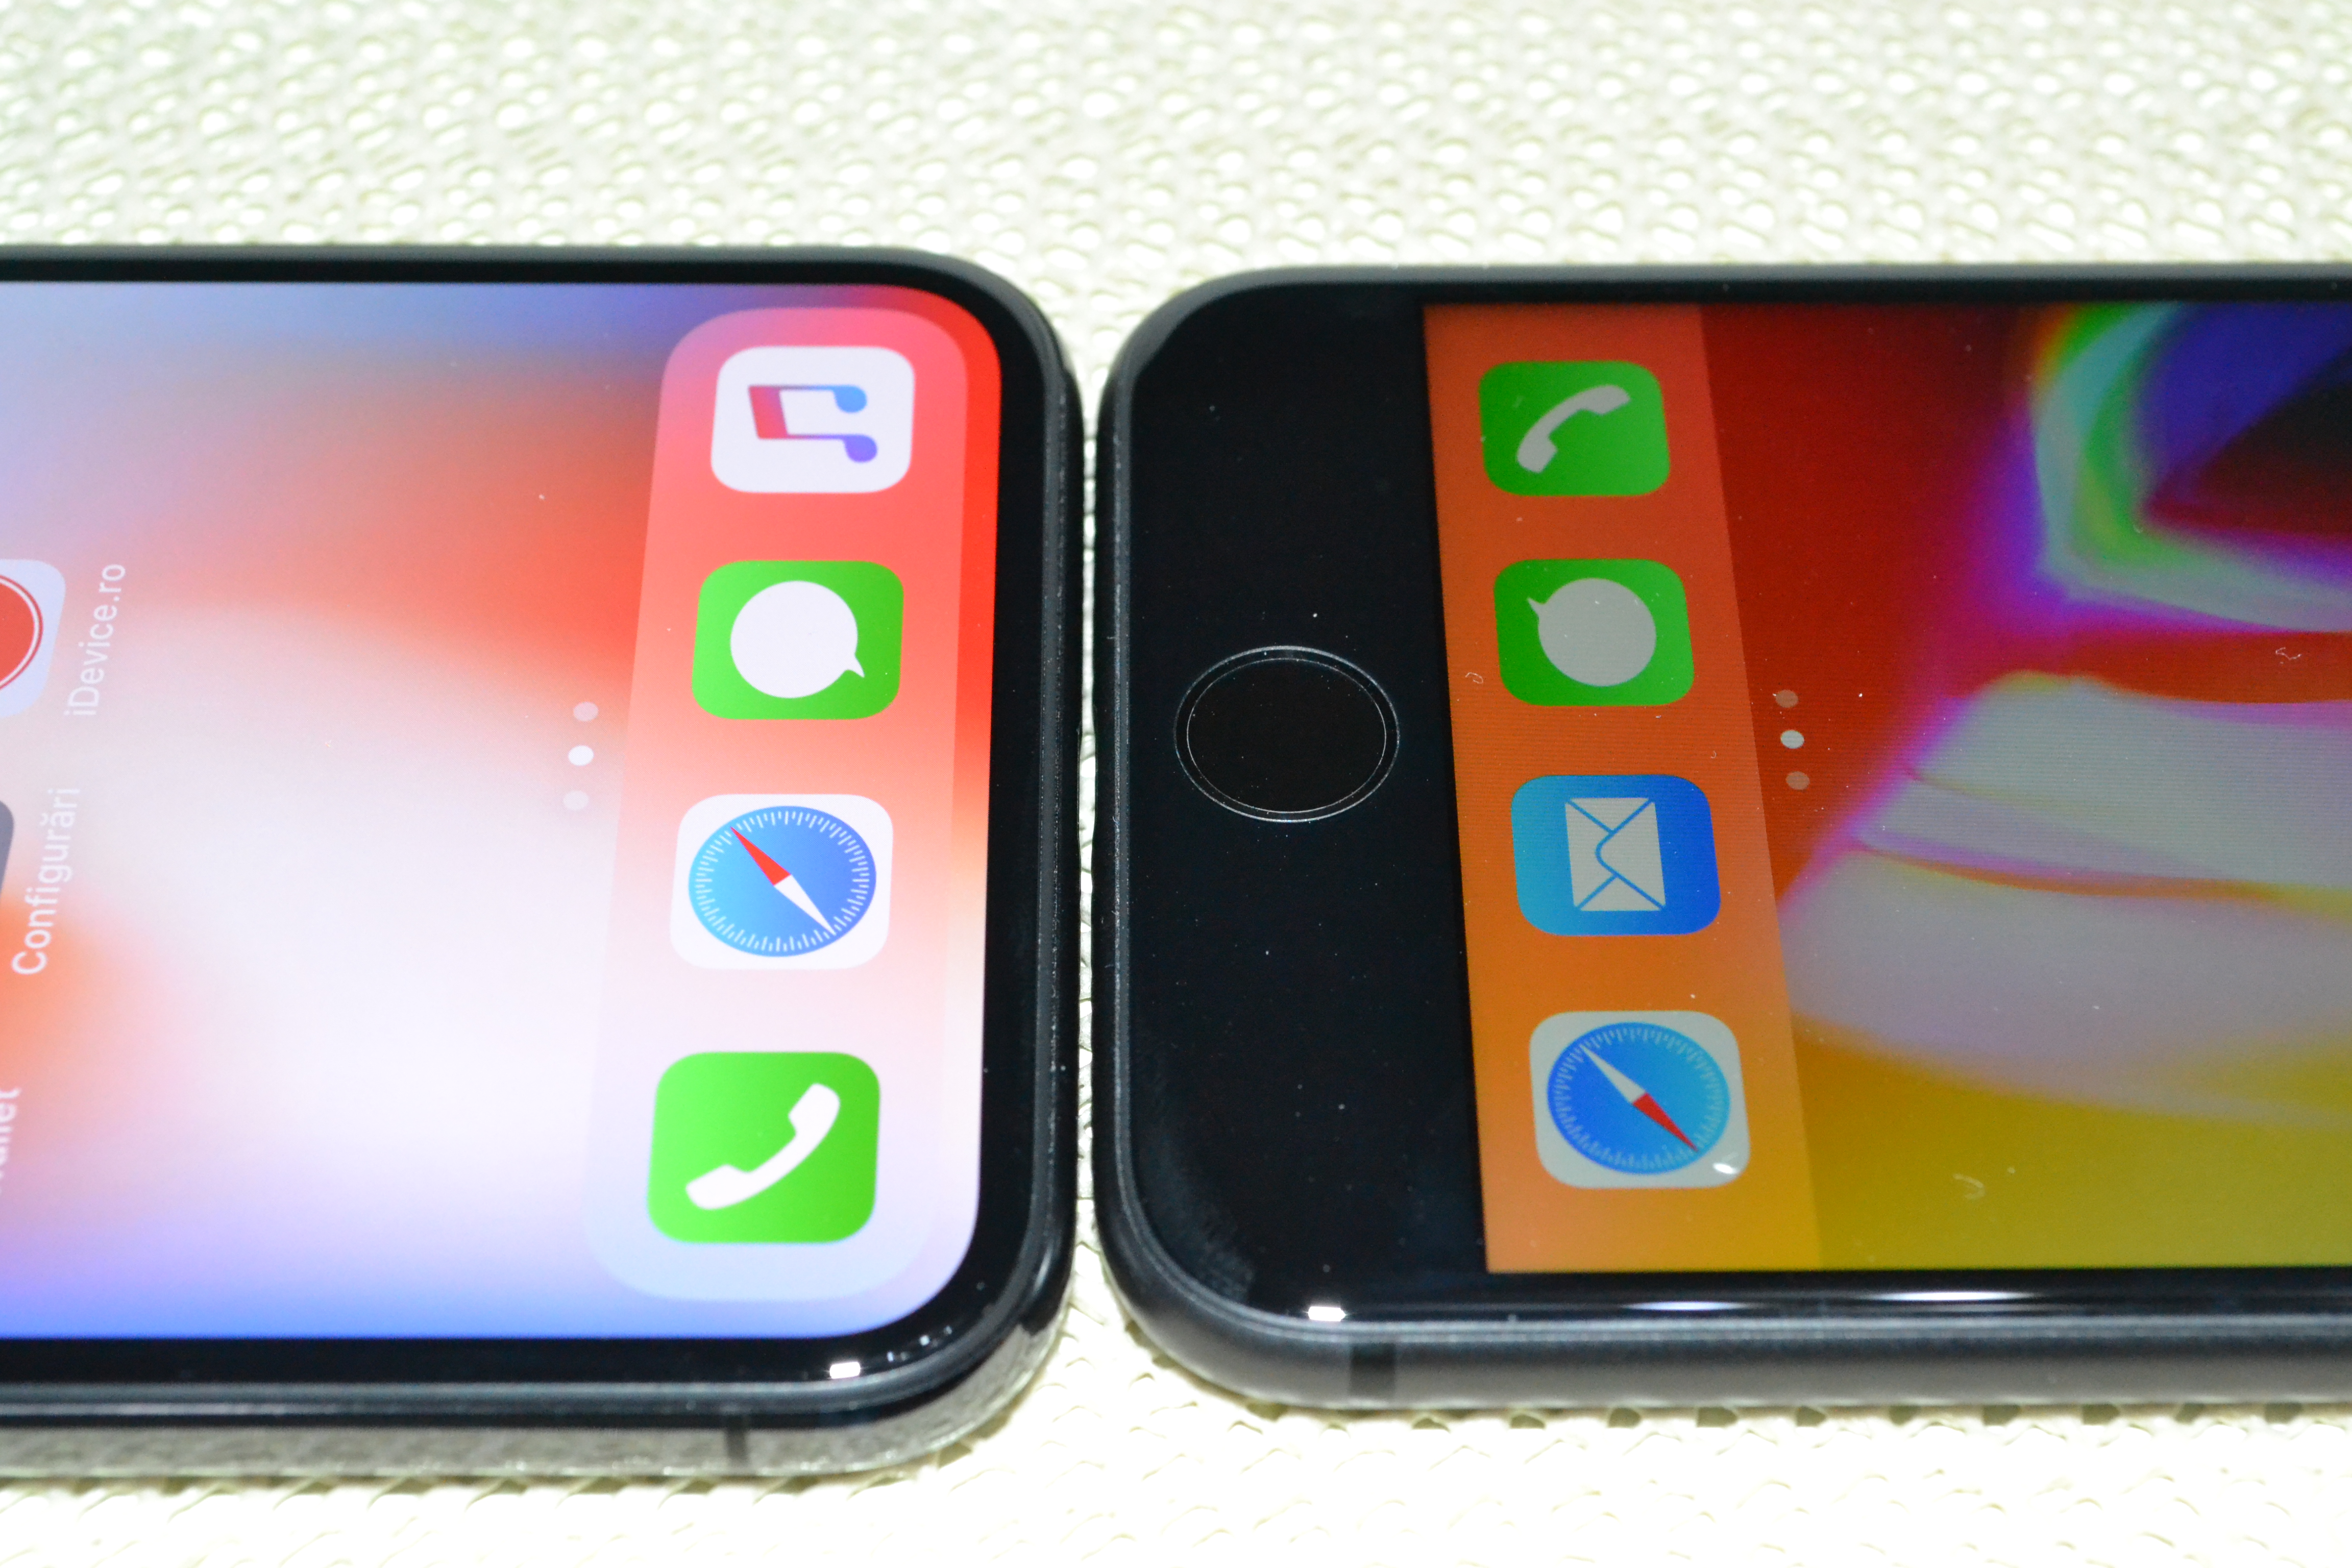 iPhone X design iPhone 8 comparison 2